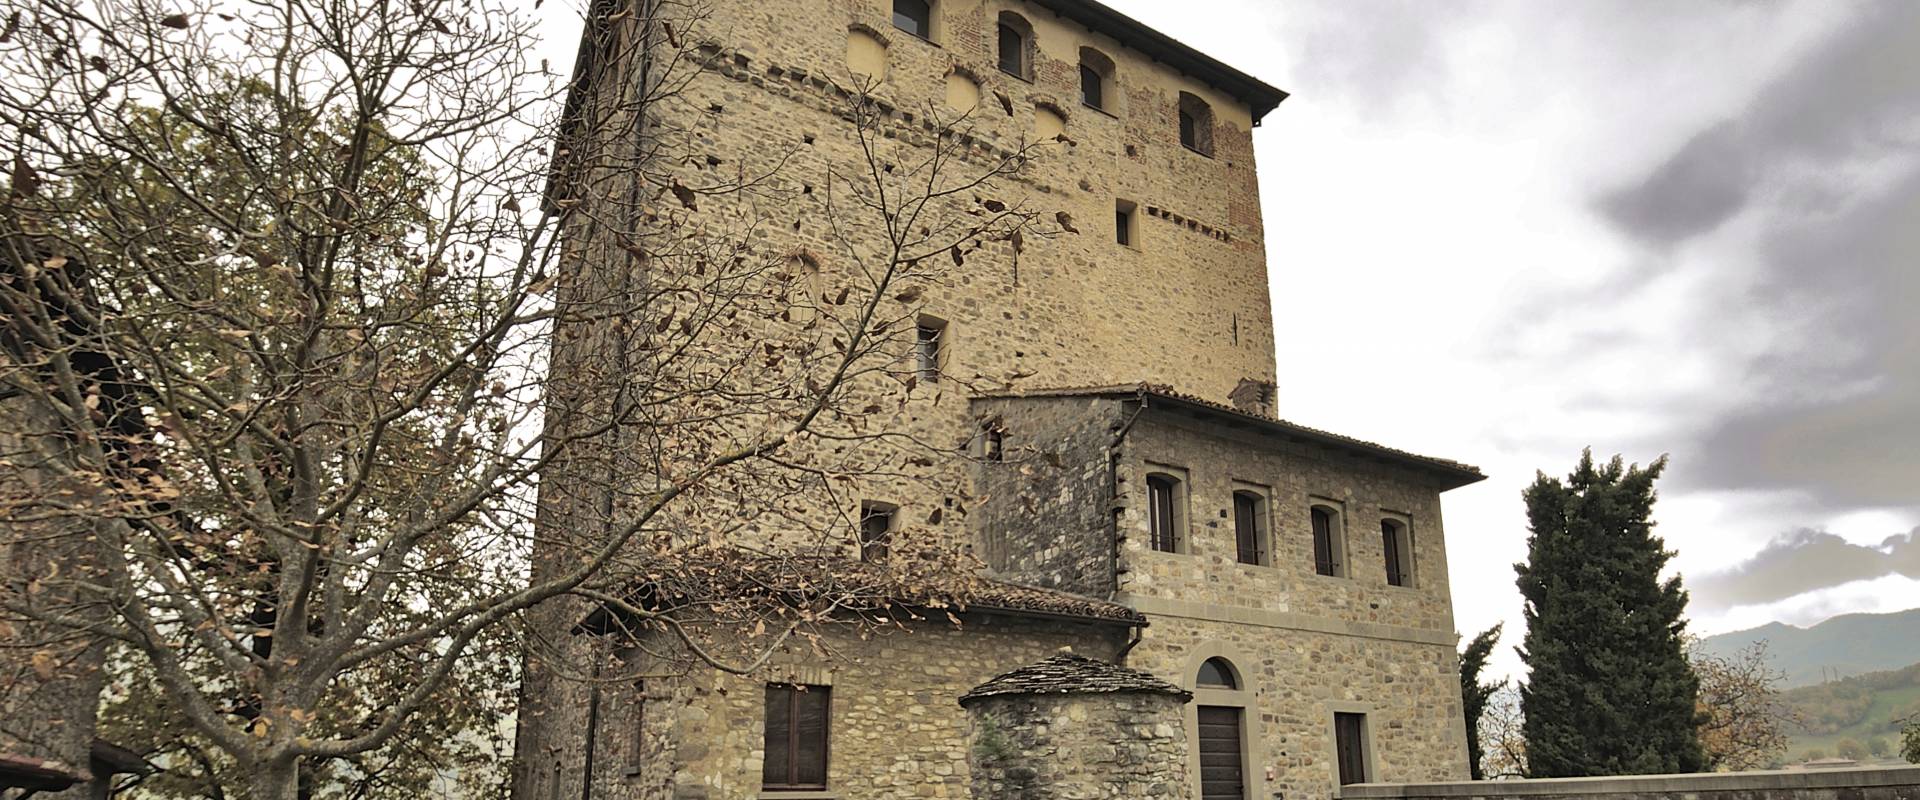 Castello Dal Verme photo by Carlo grifone